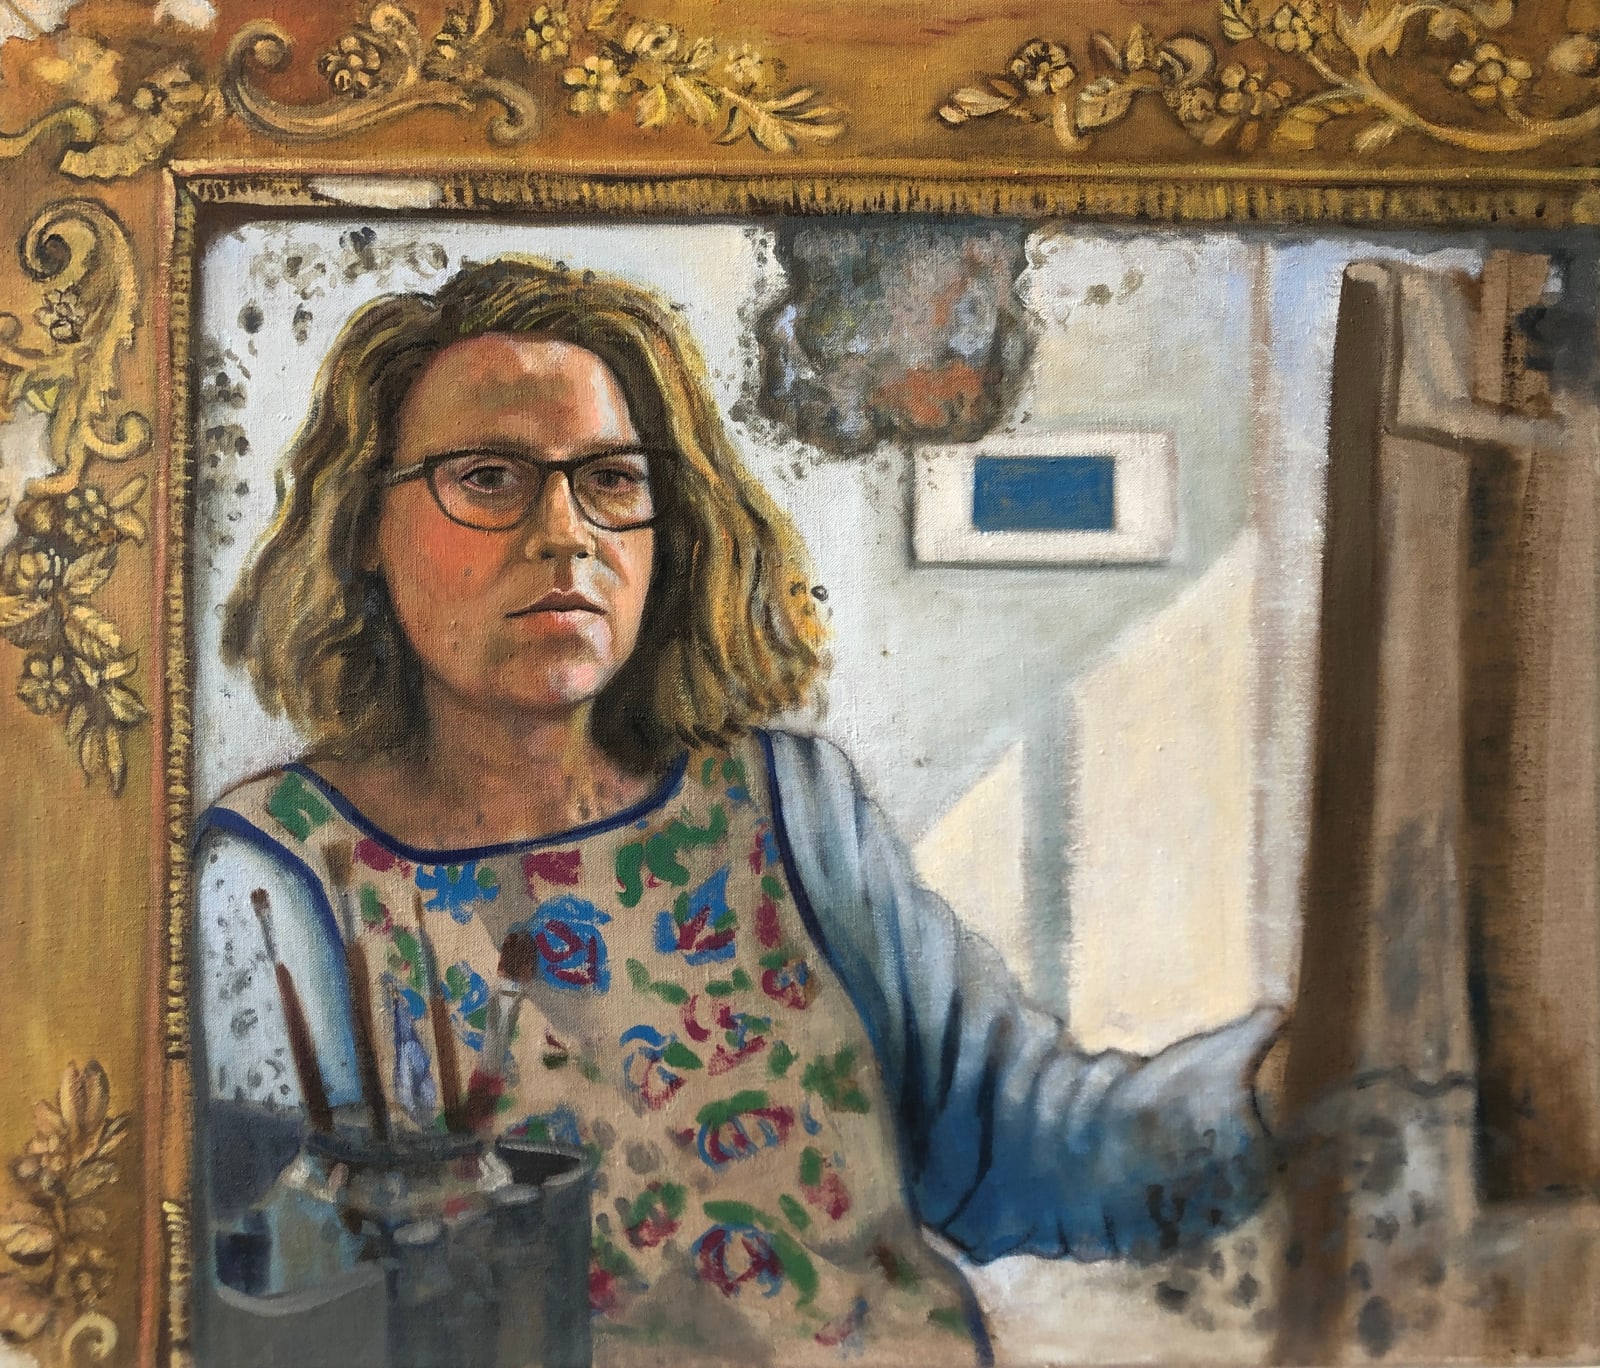 Nicola Hepworth, Self Portrait in Gericault's Mirror II, 2022